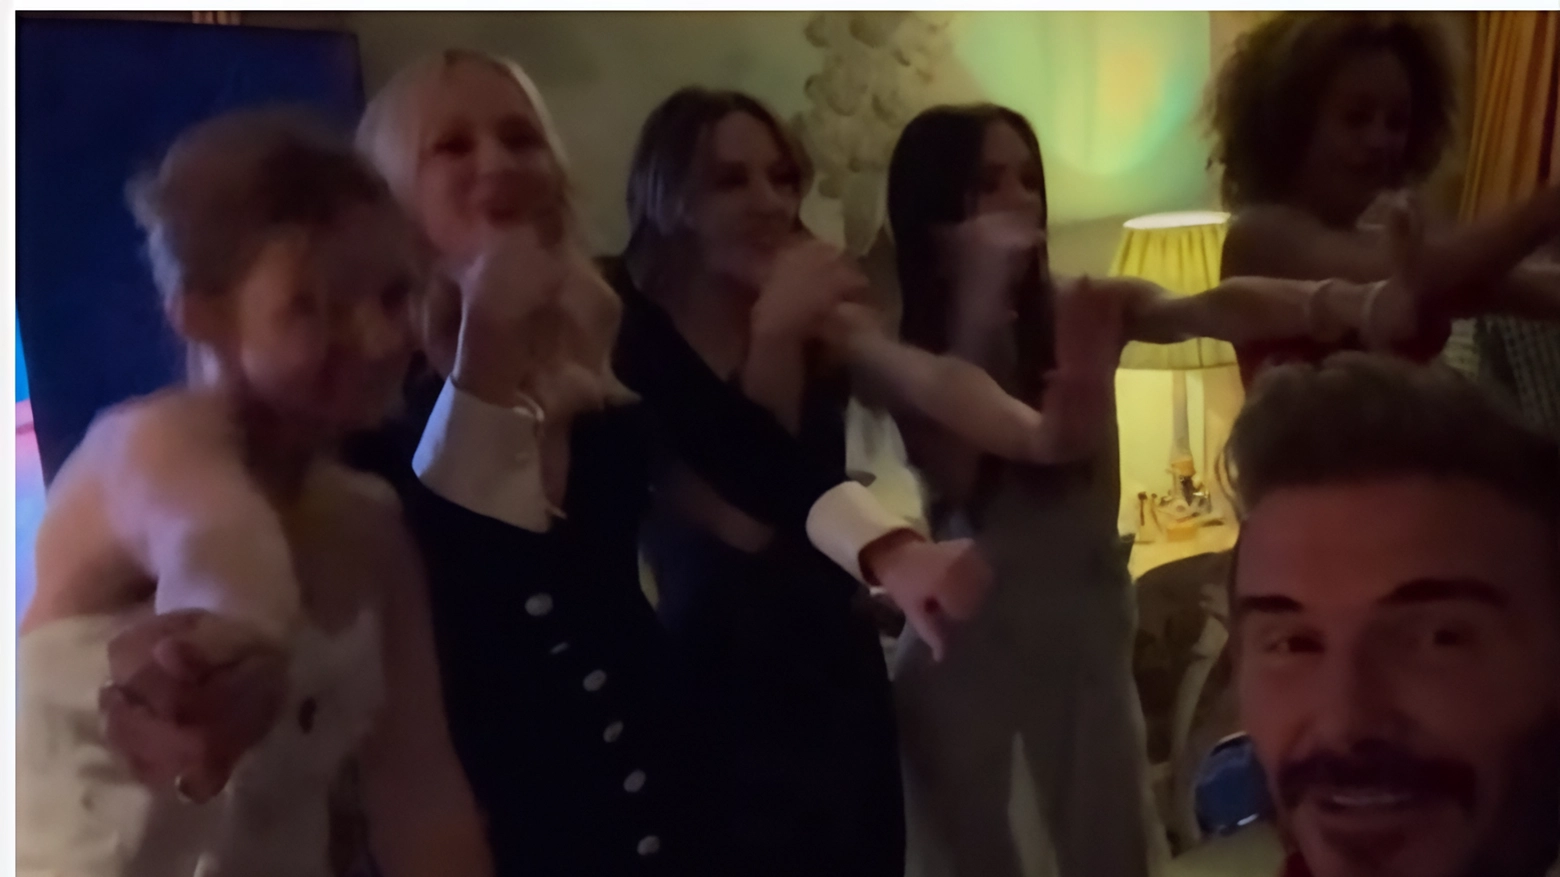 Le Spice Girls si riuniscono per il compleanno di Victoria Beckham, esibendosi in "Stop". Il party esclusivo ha visto la presenza di celebrità come Tom Cruise e Salma Hayek.